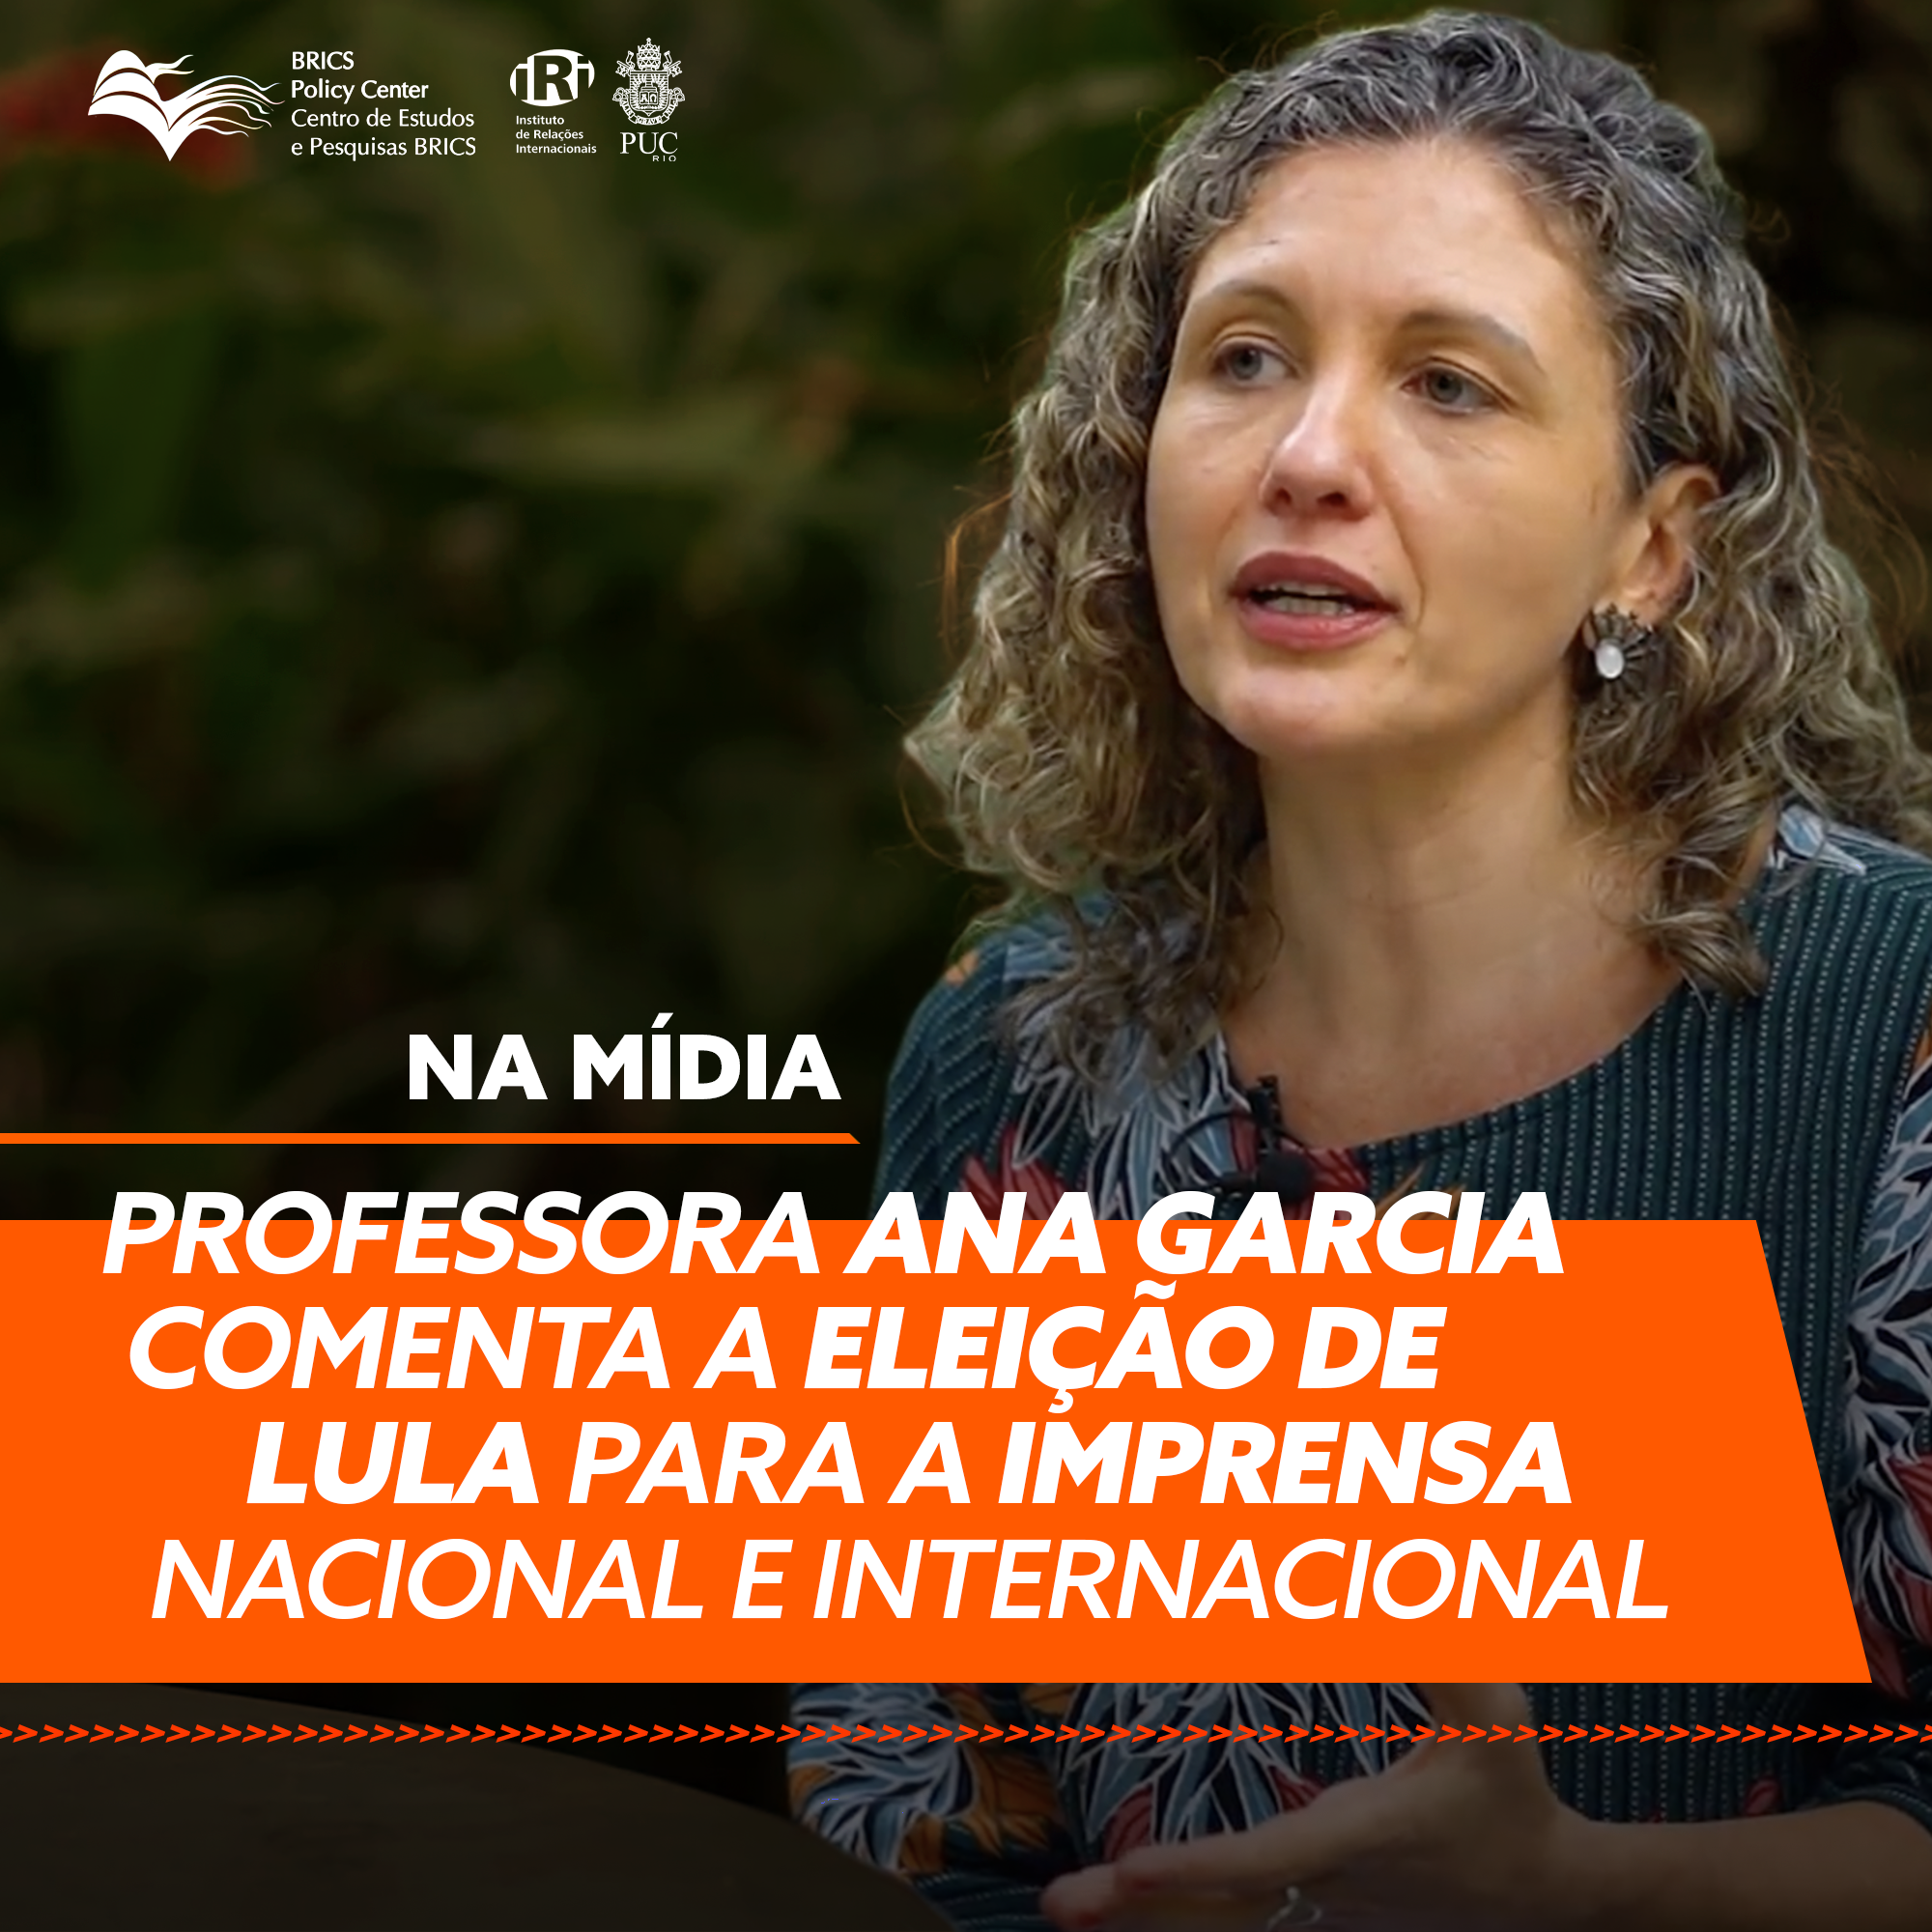 Professora Ana Garcia comenta a eleição de Lula para a imprensa nacional e internacional